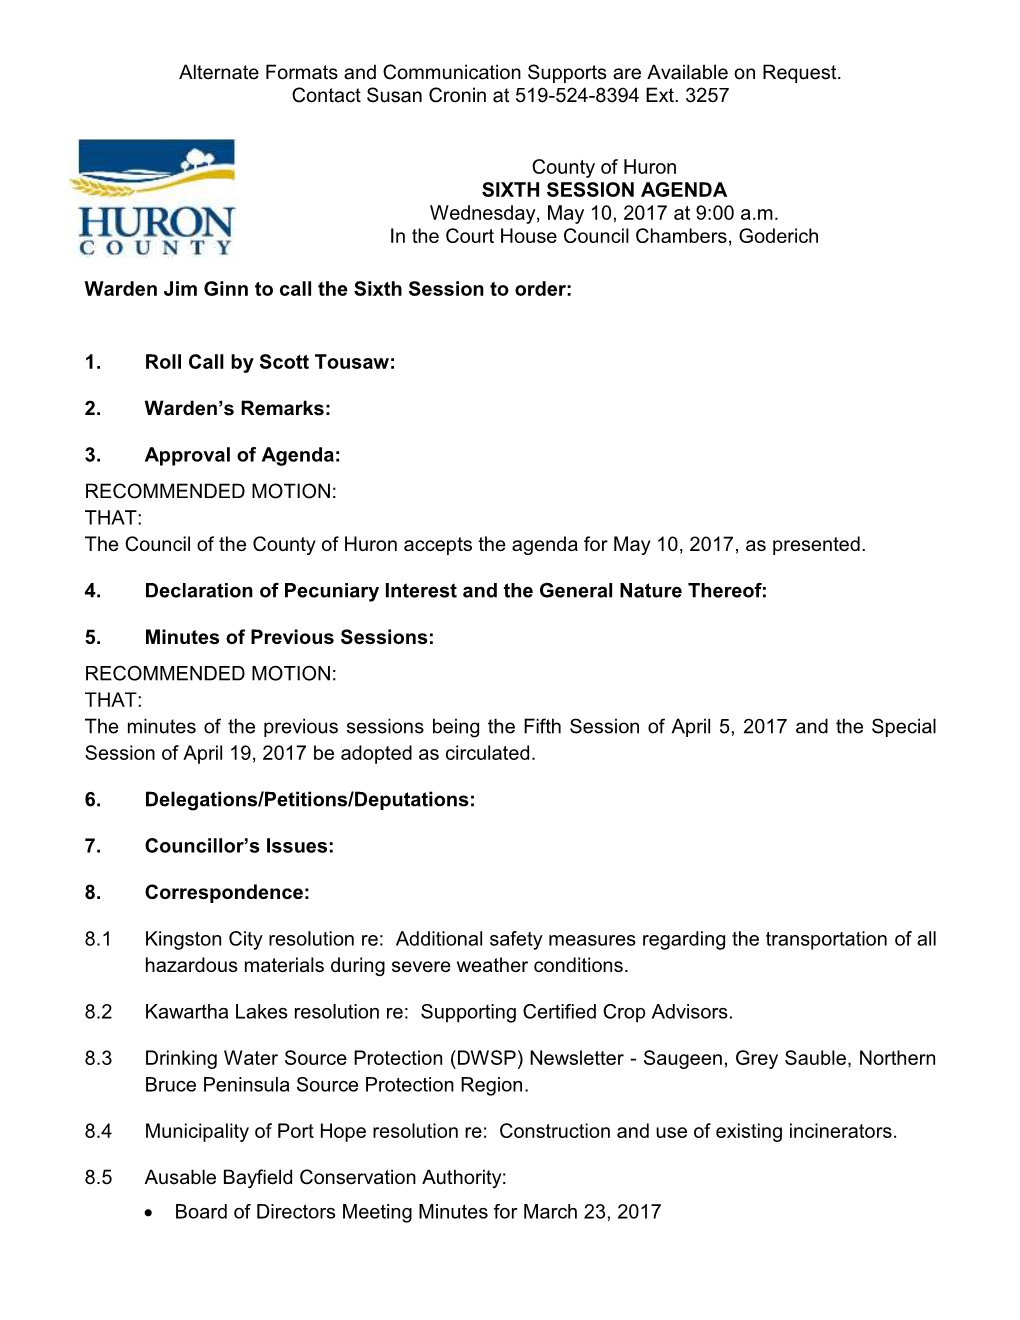 Huron County Council Agenda